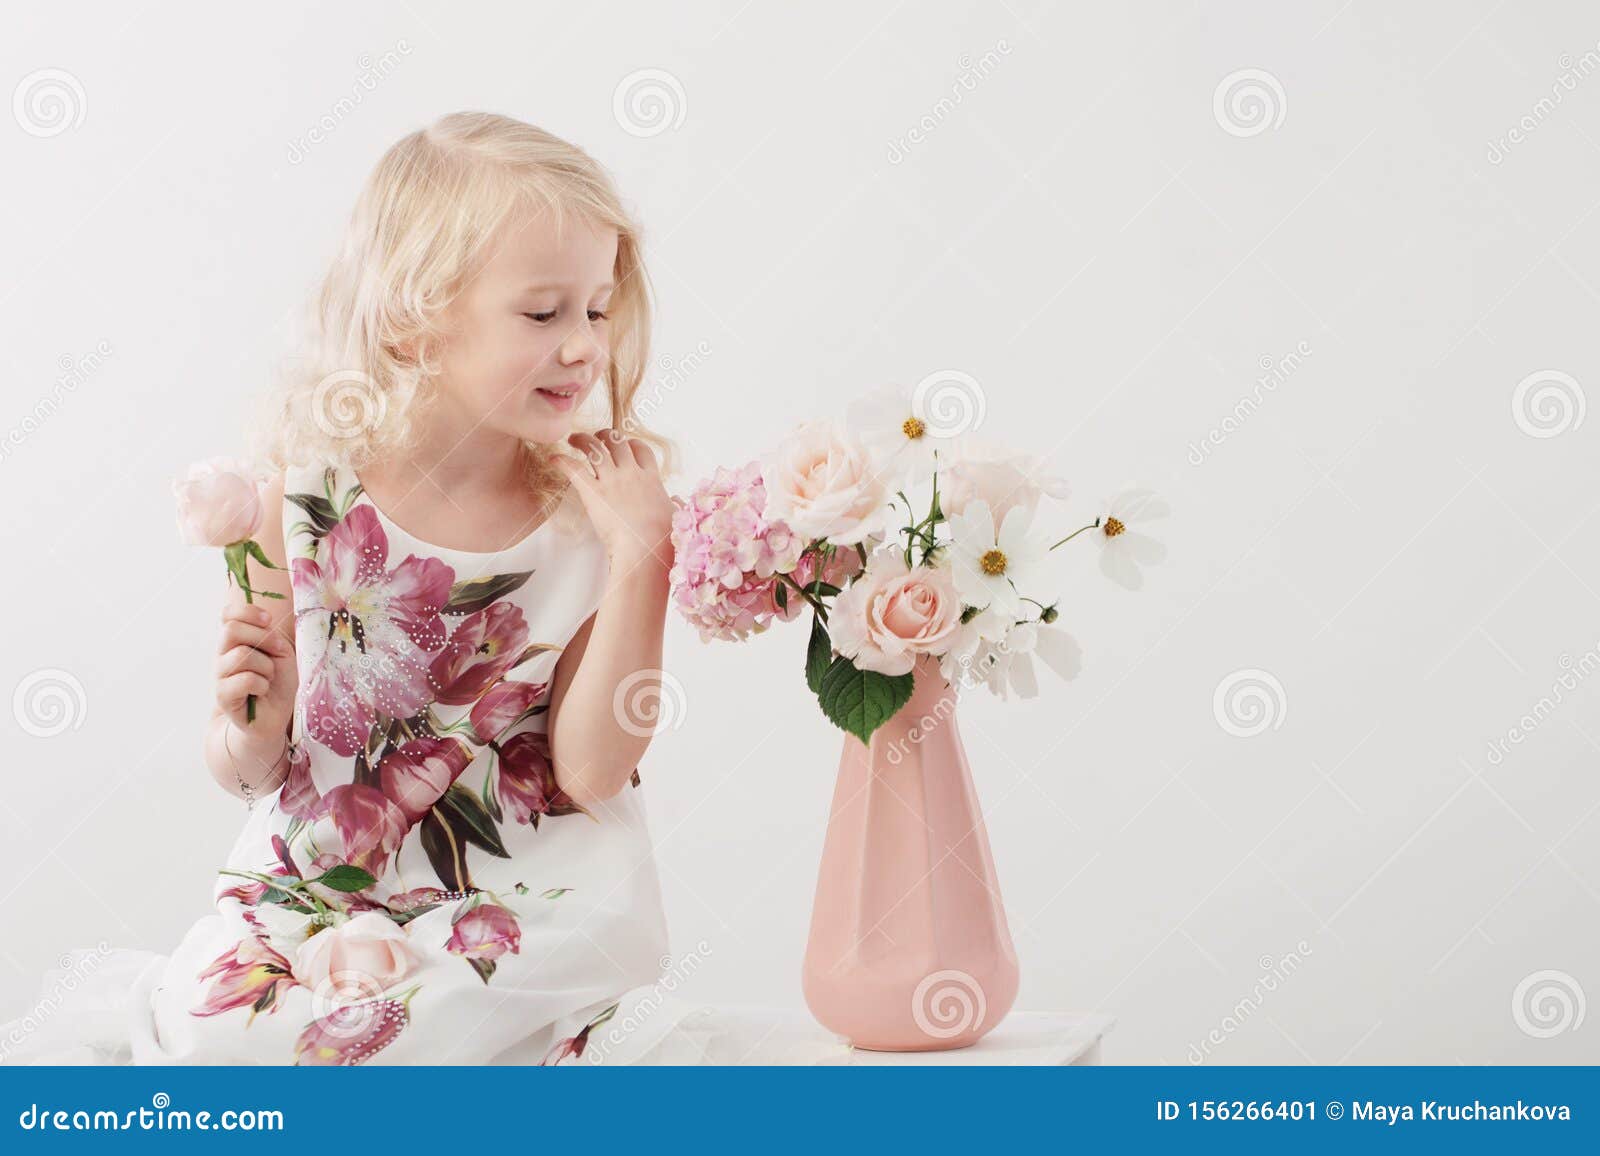 Блондинка с букетом: какие цветы дарить девушке со светлыми волосами